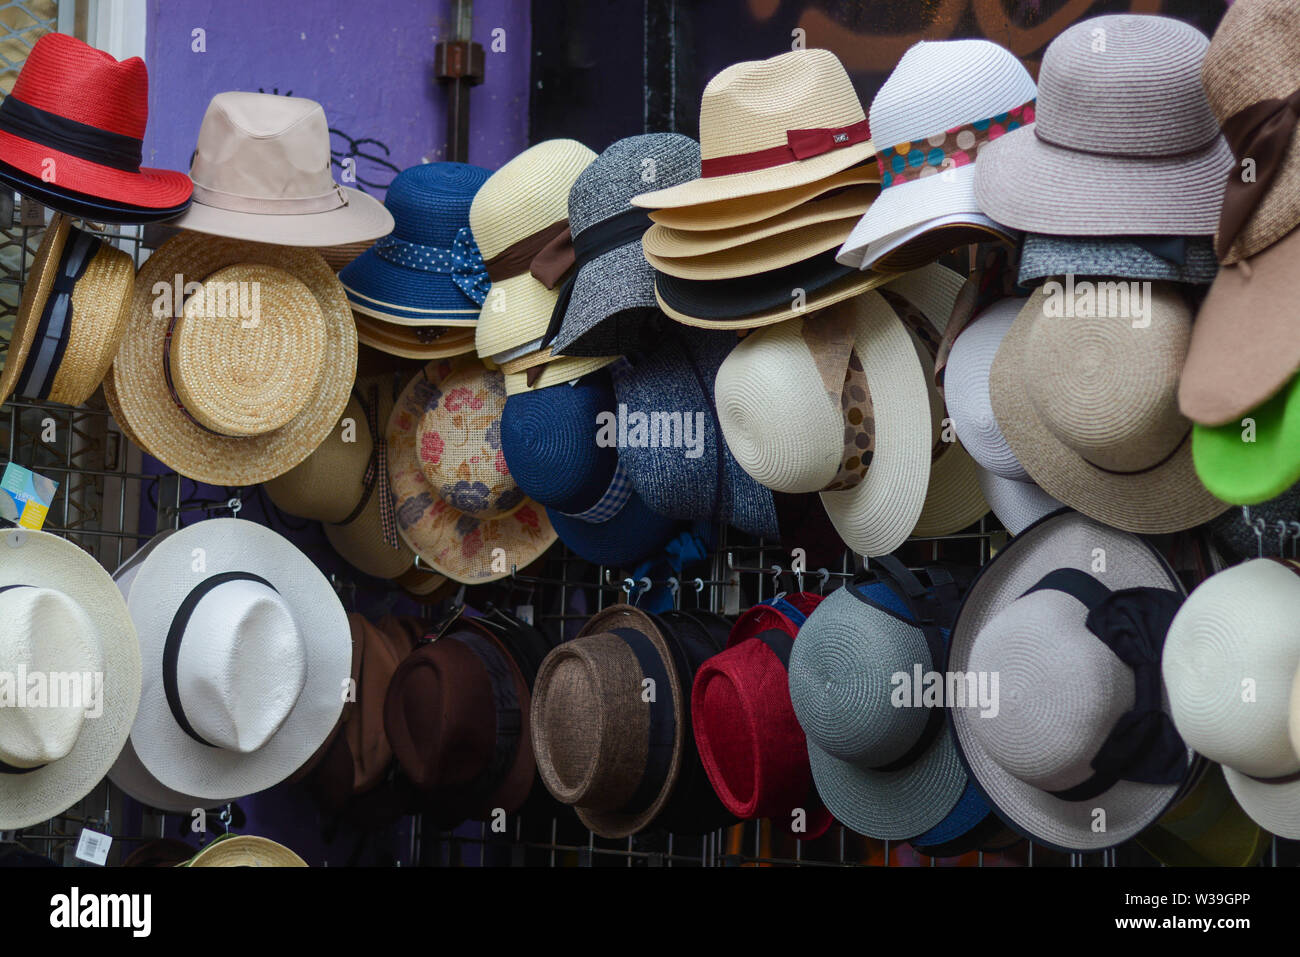 Fedora sombreros de paja para hombres en variados colores y